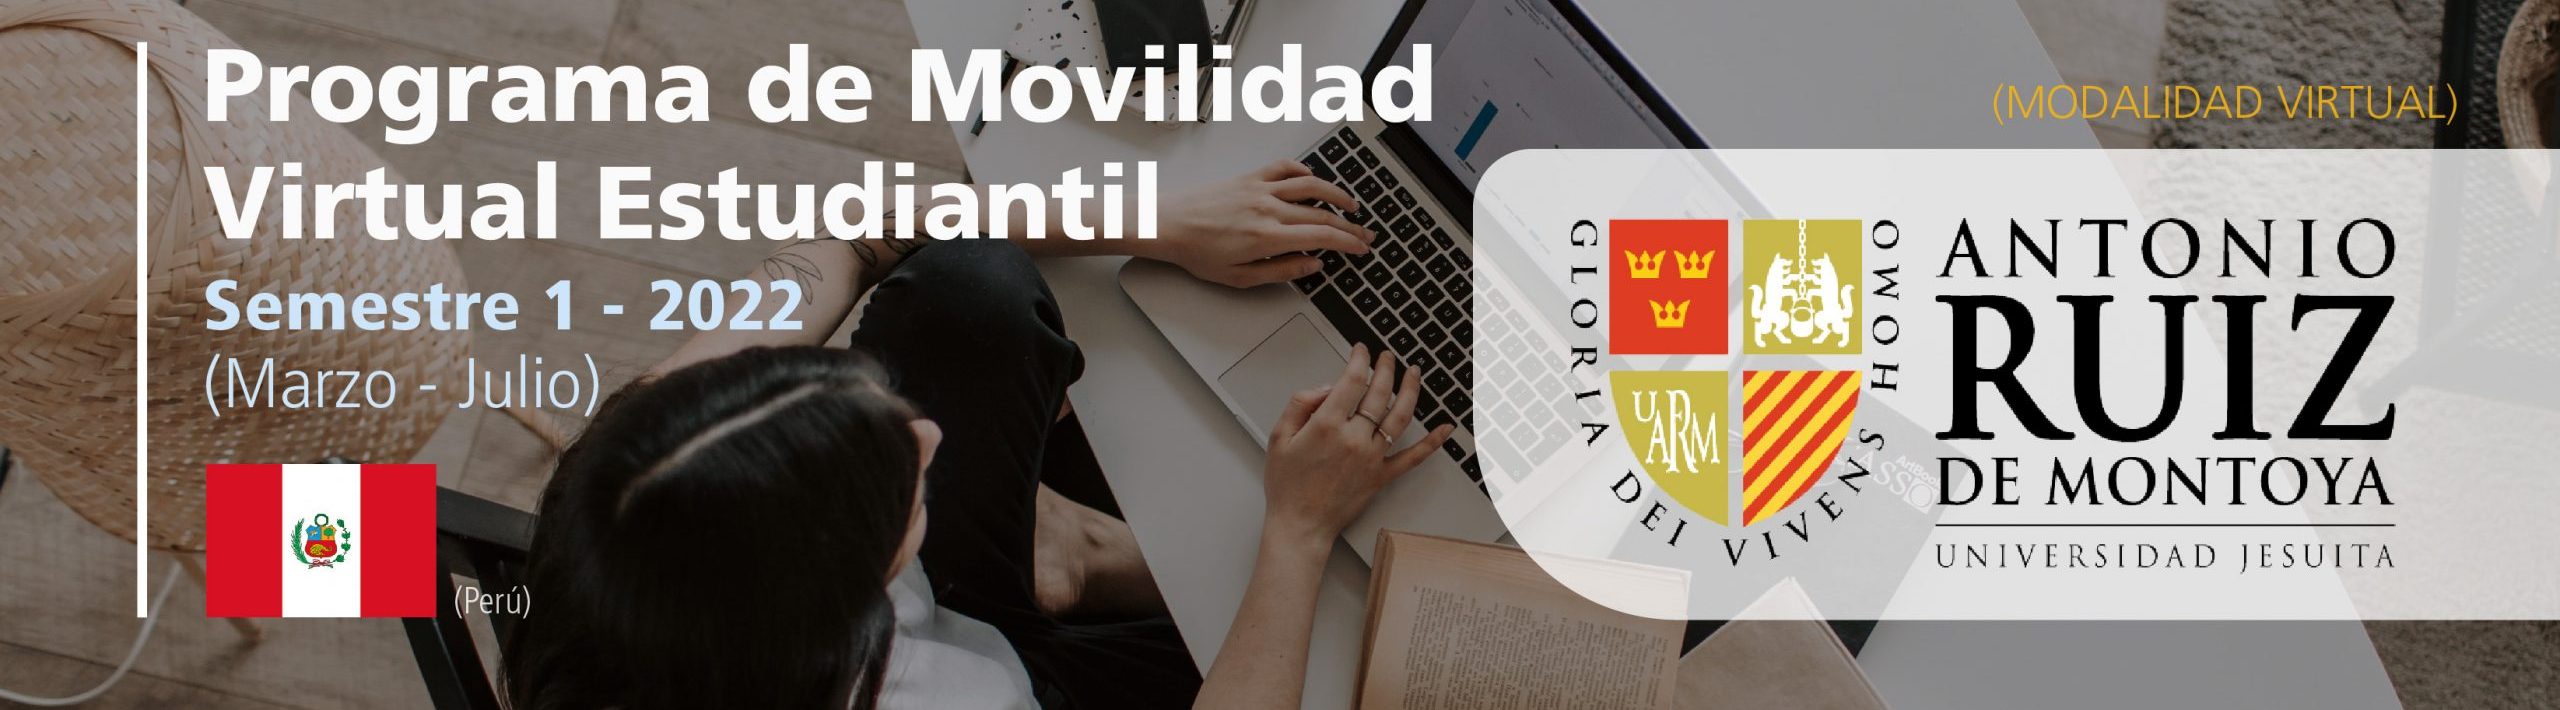 La Universidad Antonio Ruiz de Montoya de Perú cuenta con cupos para este semestre 1-2022 bajo el Programa de Movilidad Virtual Estudiantil UCB por el Mundo